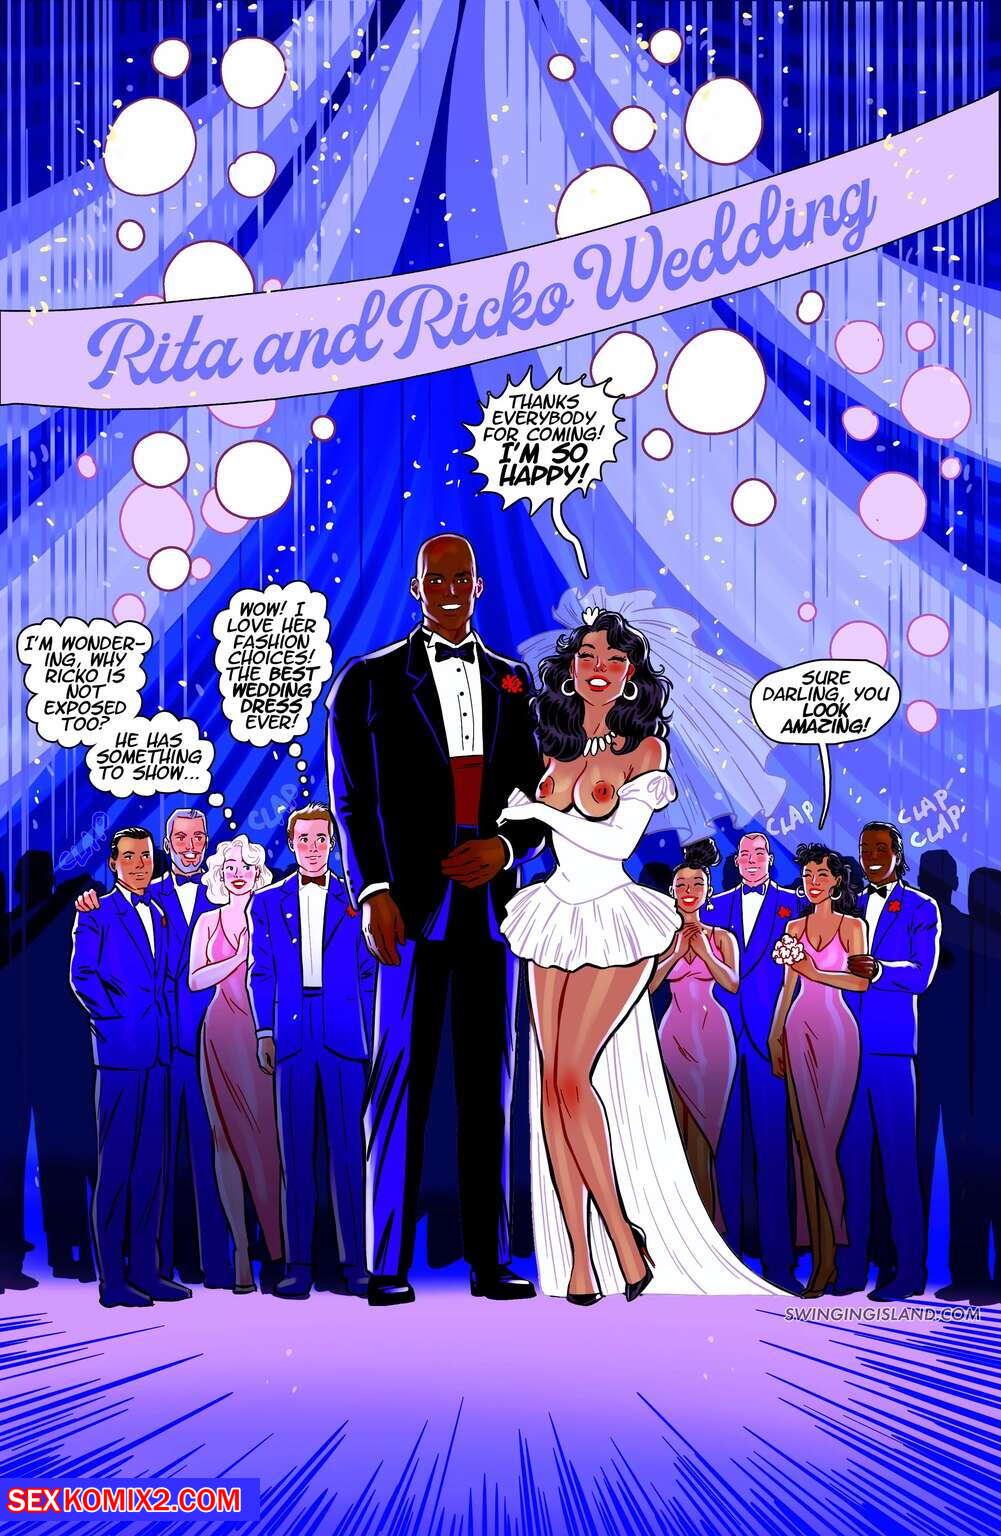 Bride Interracial Porn Art - âœ…ï¸ Porn comic Swinging Island. Rita and Ricko wedding. Andrew Tarusov Sex  comic guy and the | Porn comics in English for adults only | sexkomix2.com